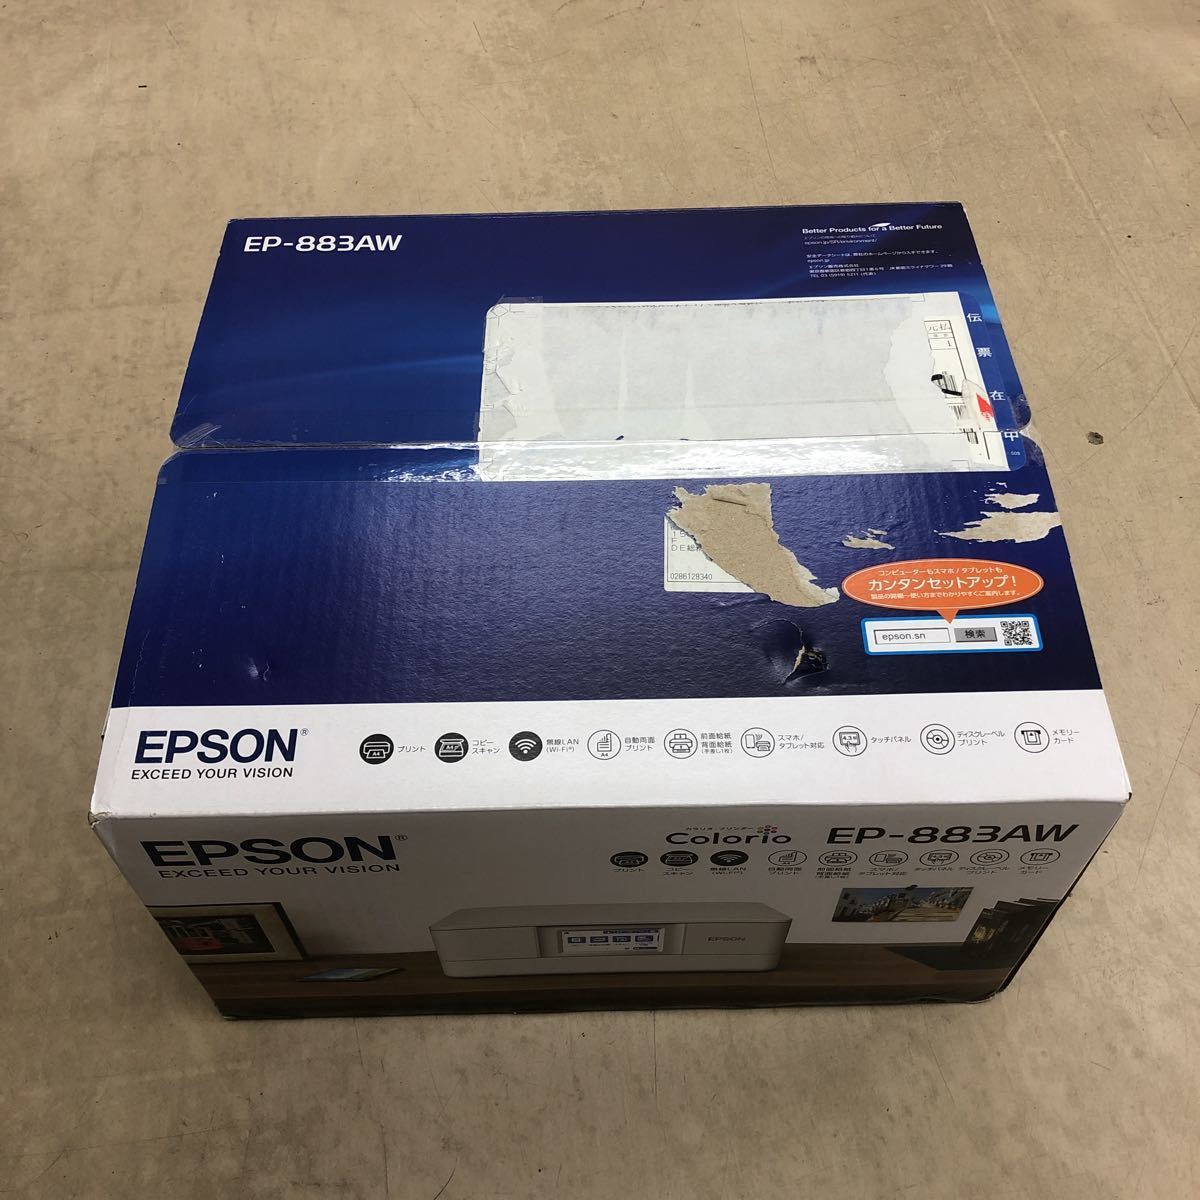 未使用品 EPSON カラリオ プリンター EP-883AW インクジェット複合機 エプソン 